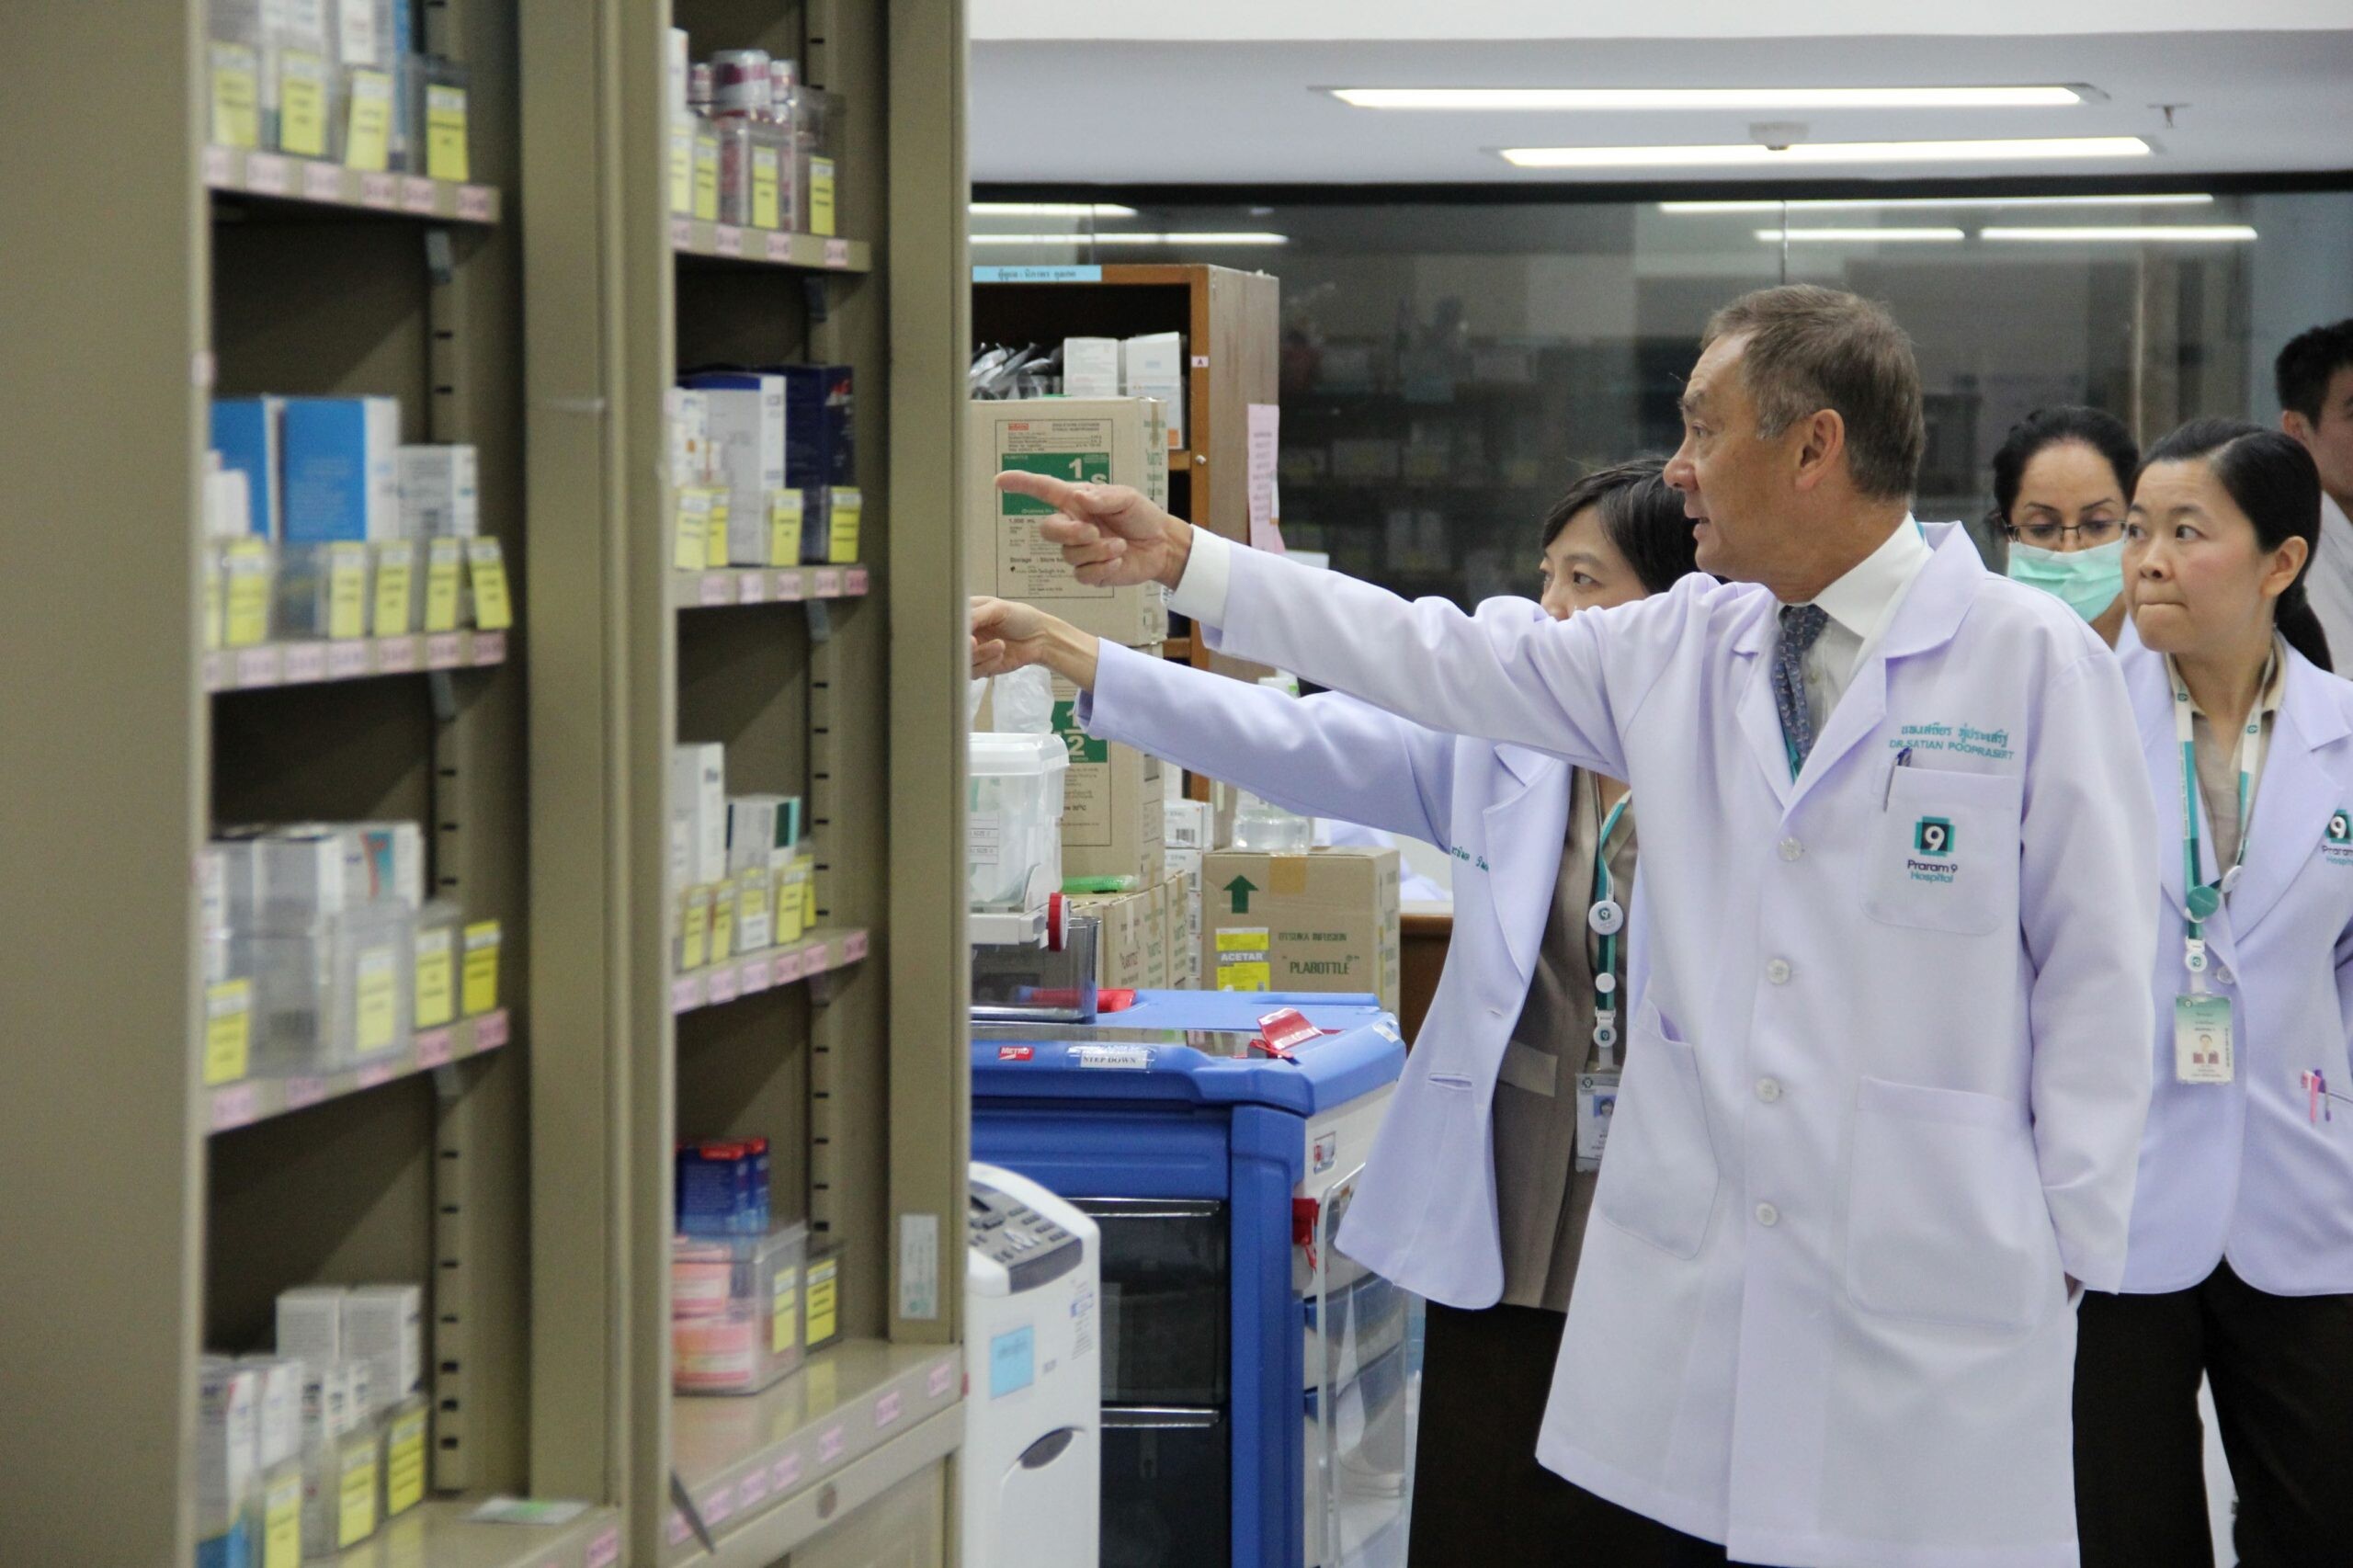 PR9 โชว์ผลงาน Q1/65 นิวไฮกำไรพุ่ง 308%  ยอดผู้ป่วยใน-นอกเพิ่ม รุกตลาดจีน อัพฐานลูกค้าใหม่